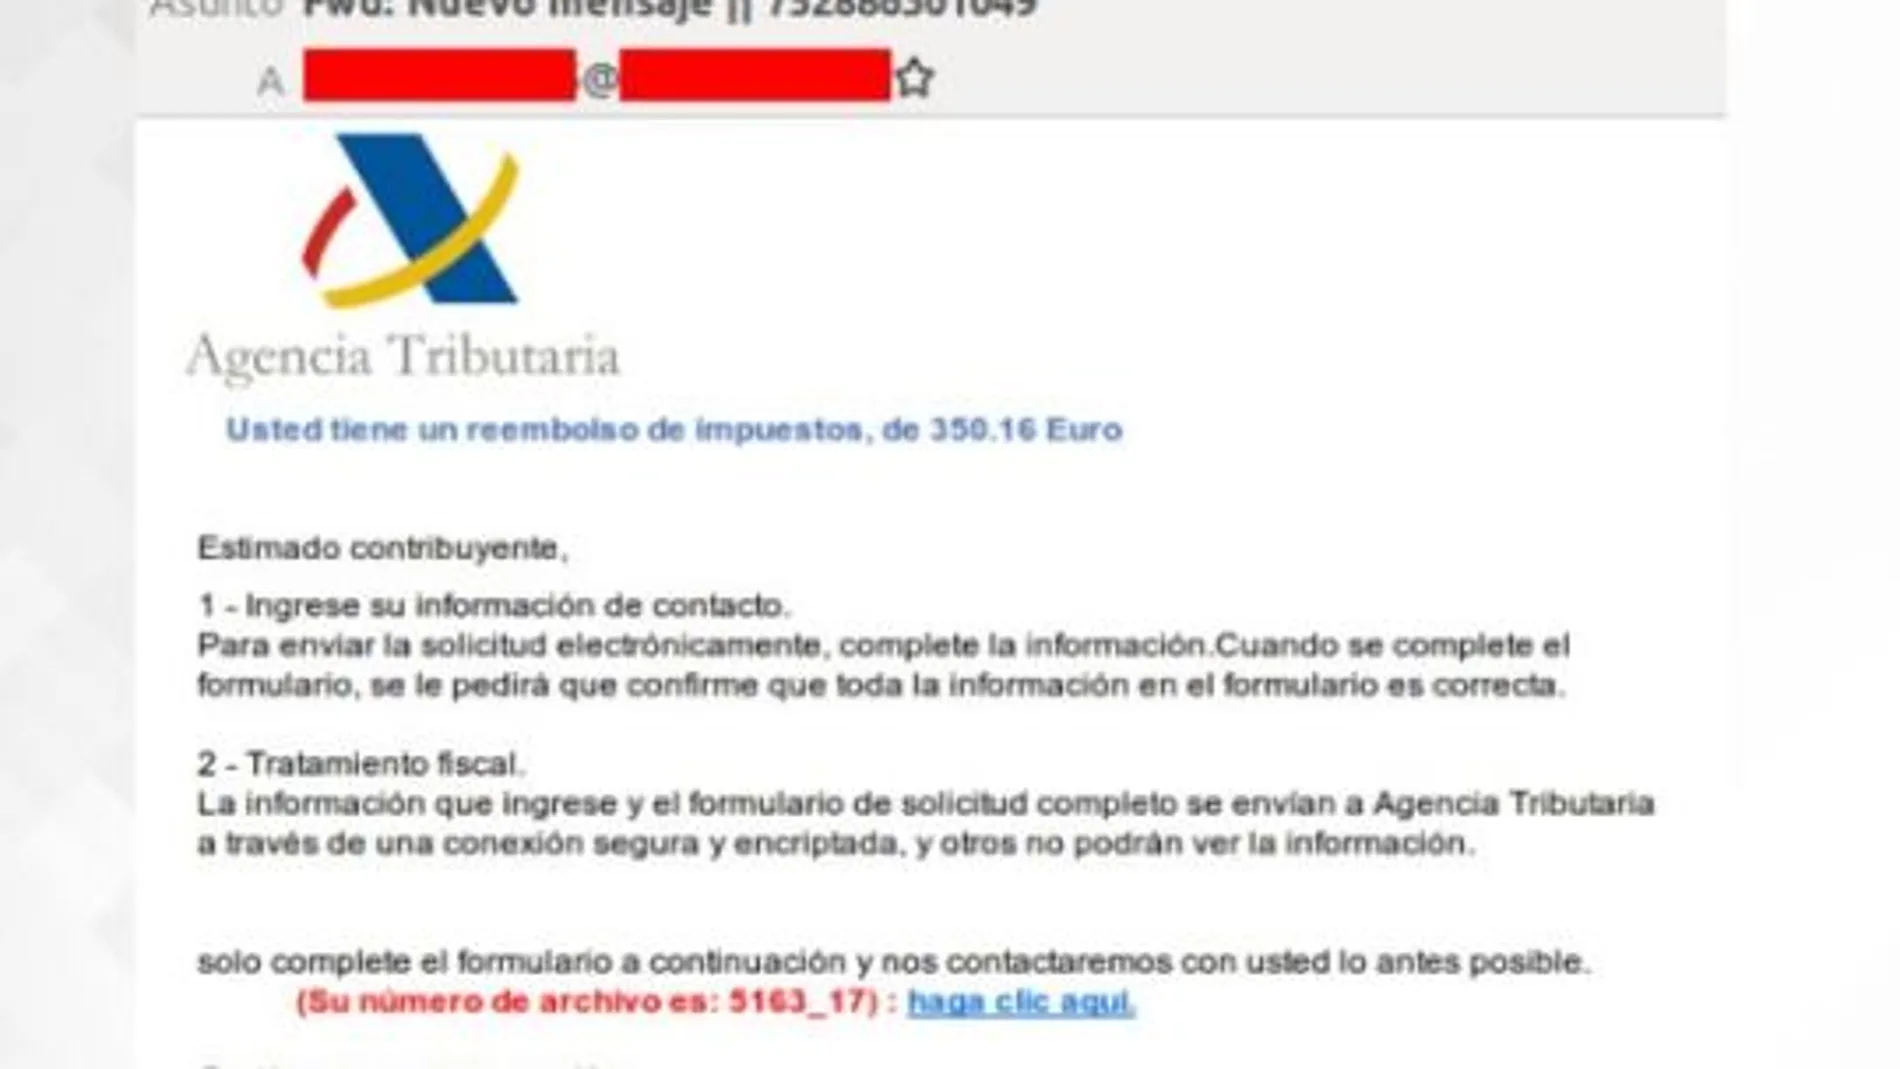 Nueva campaña de phishing a través de e-mail simulando correos procedentes de la Agencia Tributaria